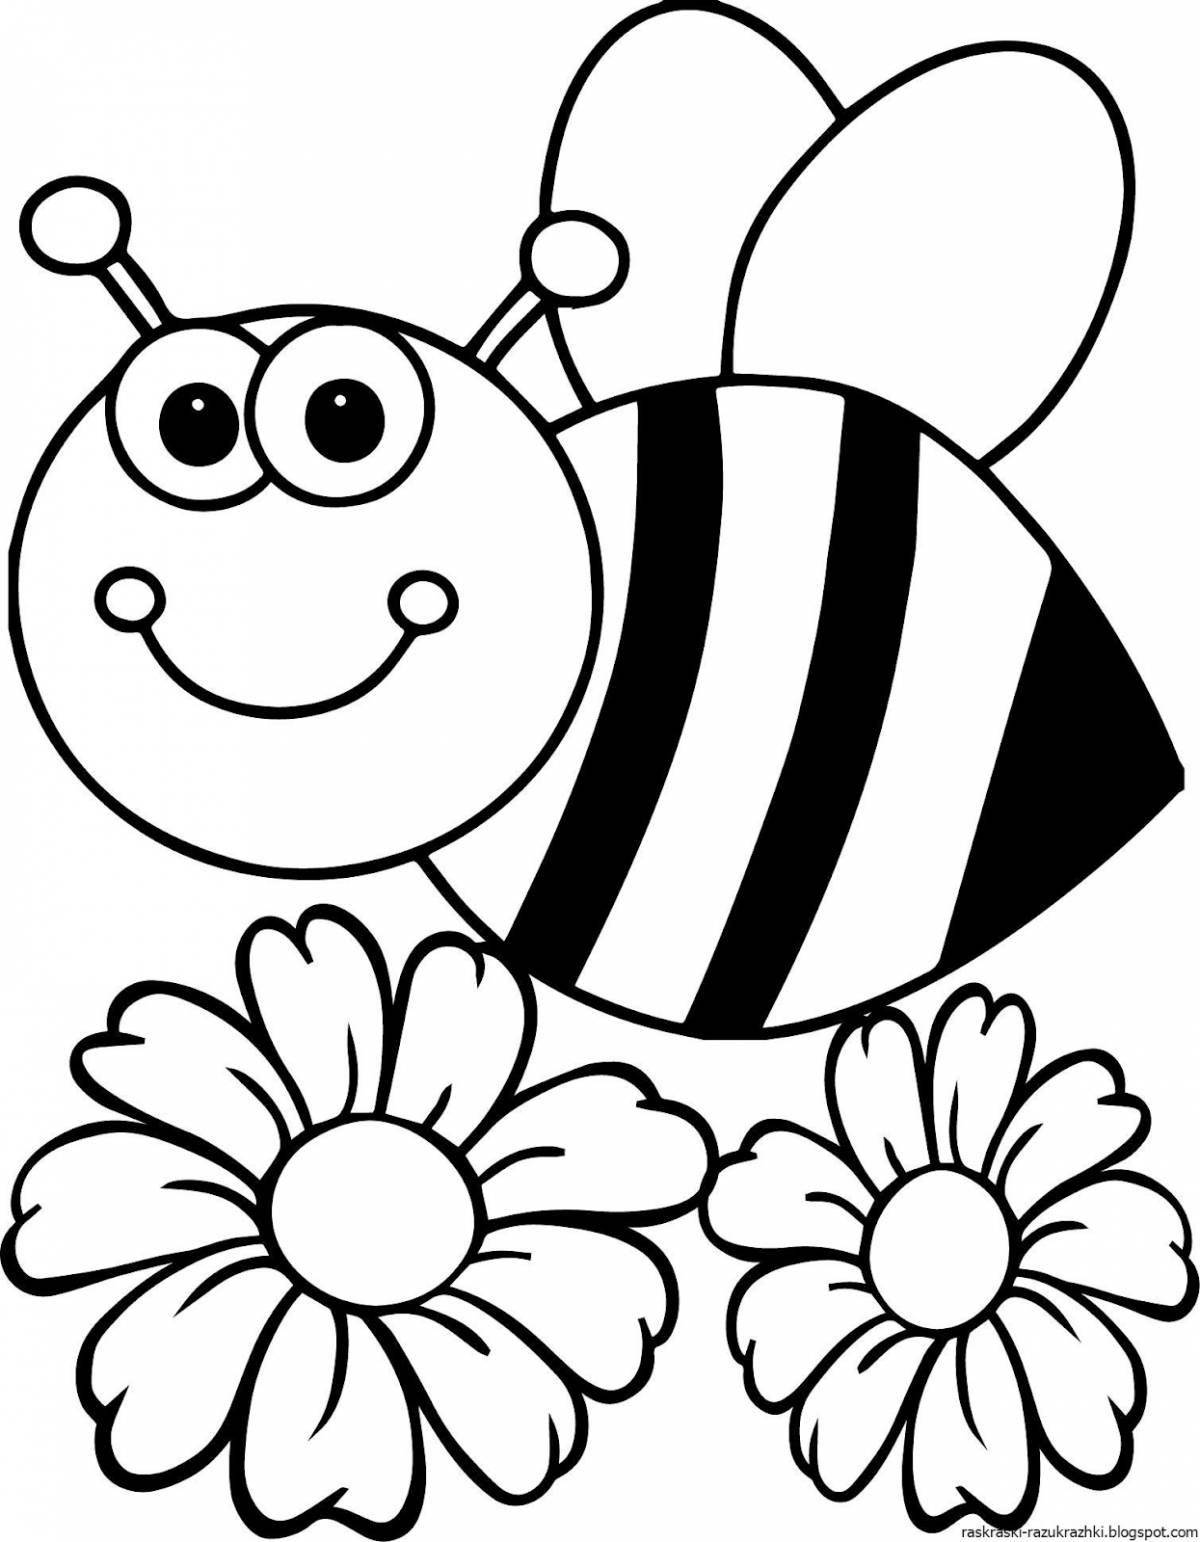 Яркая пчела-раскраска на цветке